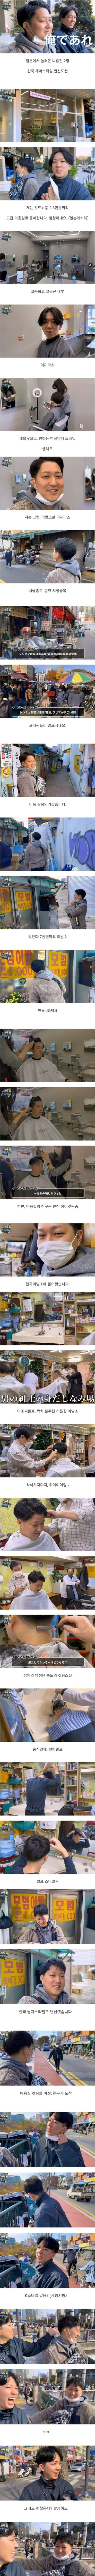 일본인들의 한국 이발소 vs 미용실 체험기